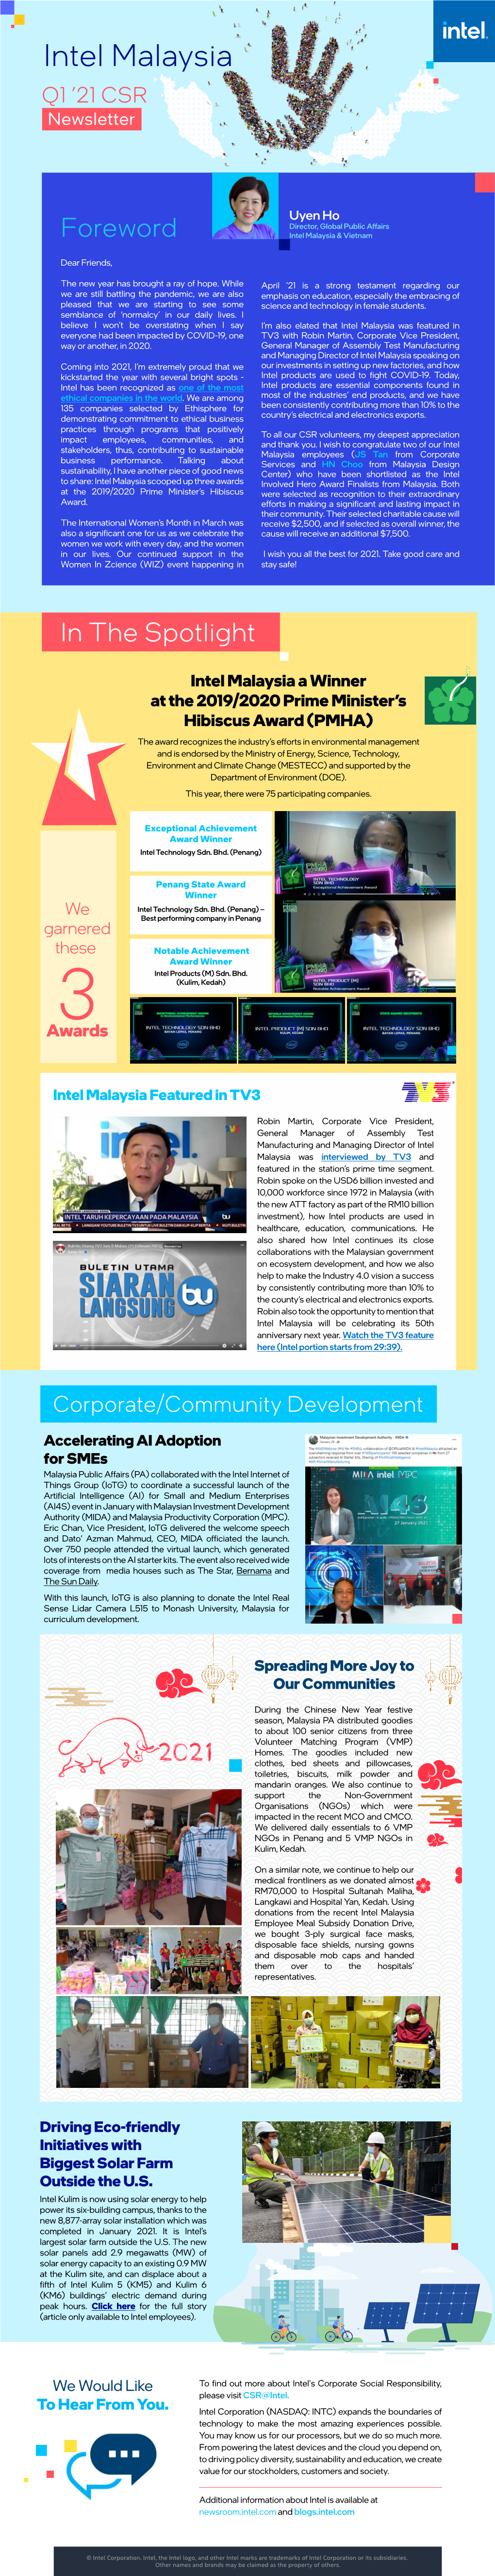 Intel Malaysia Q1 ’21 CSR Newsletter